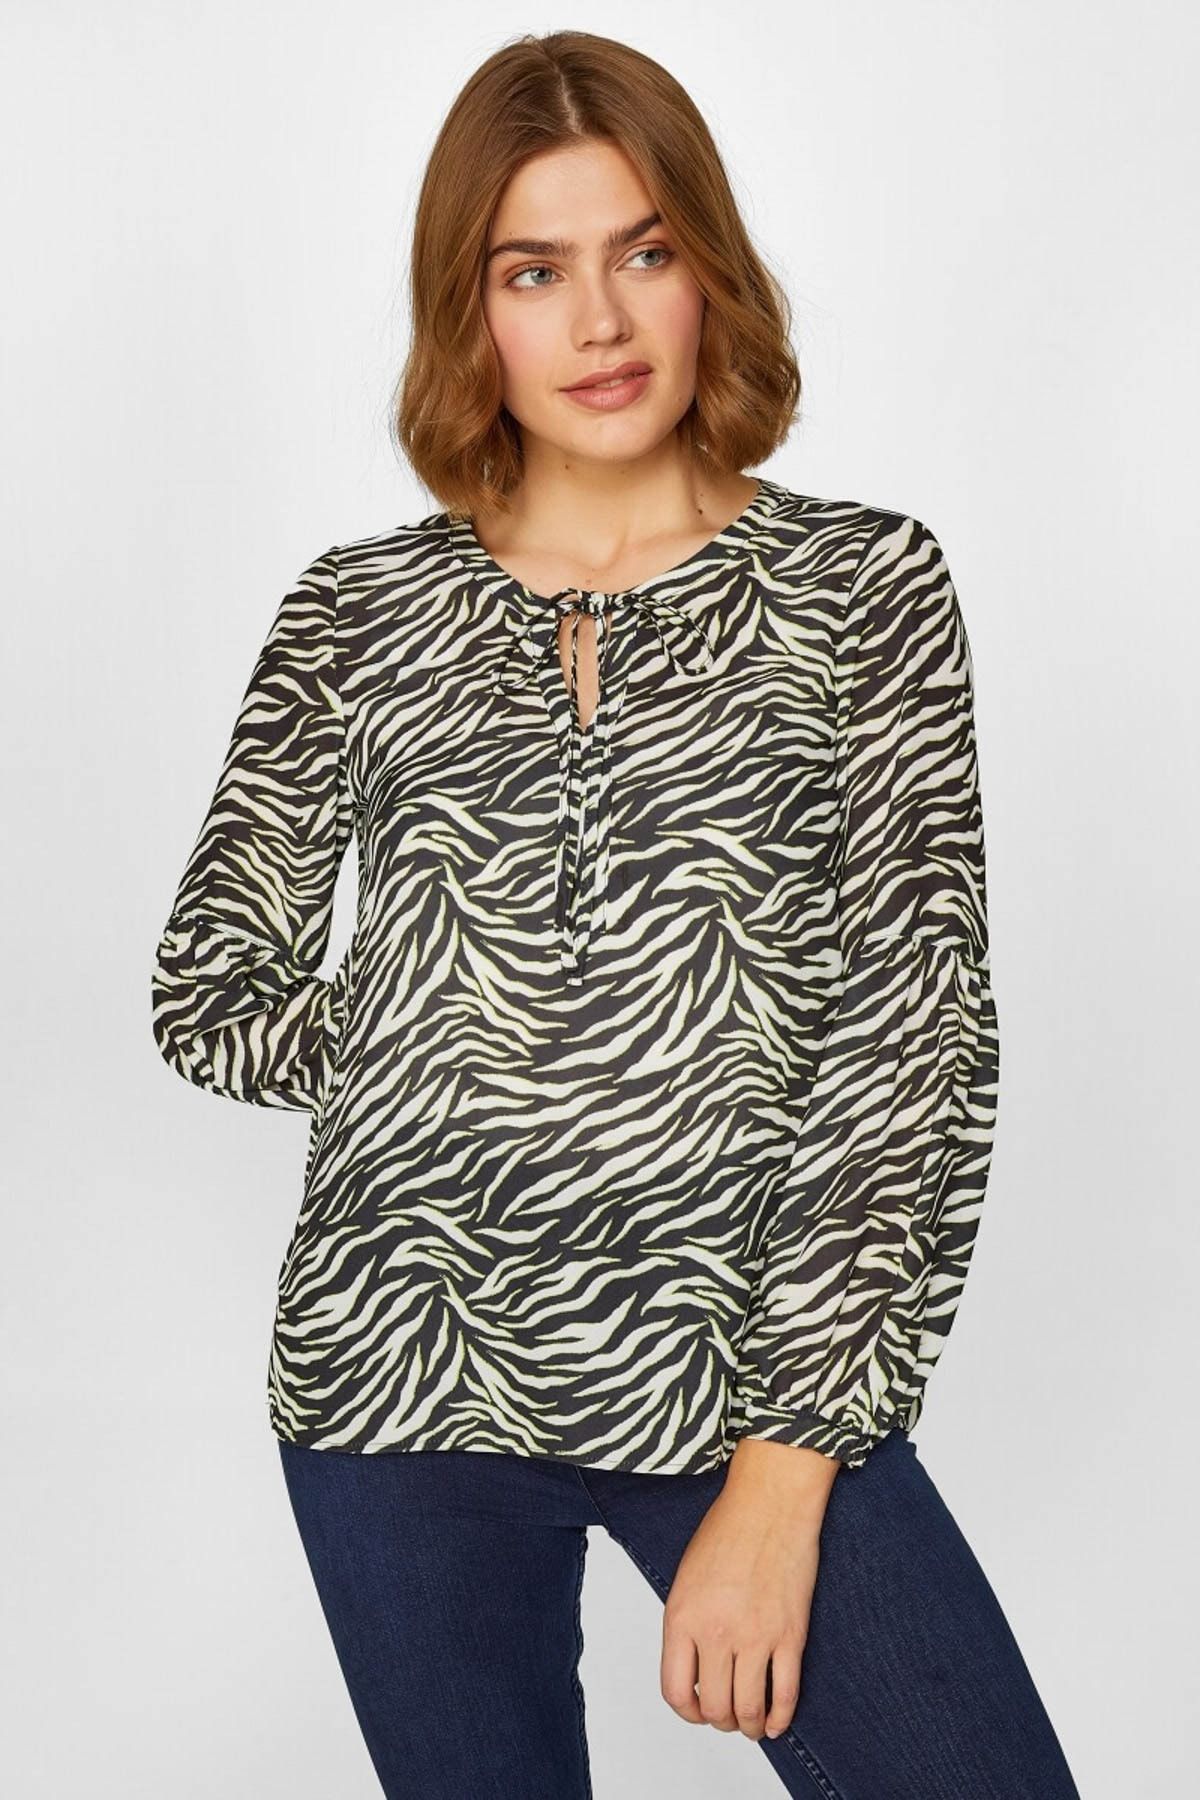 Faik Sönmez Kadın Beyaz Zebra Desenli Bluz 60147 U60147